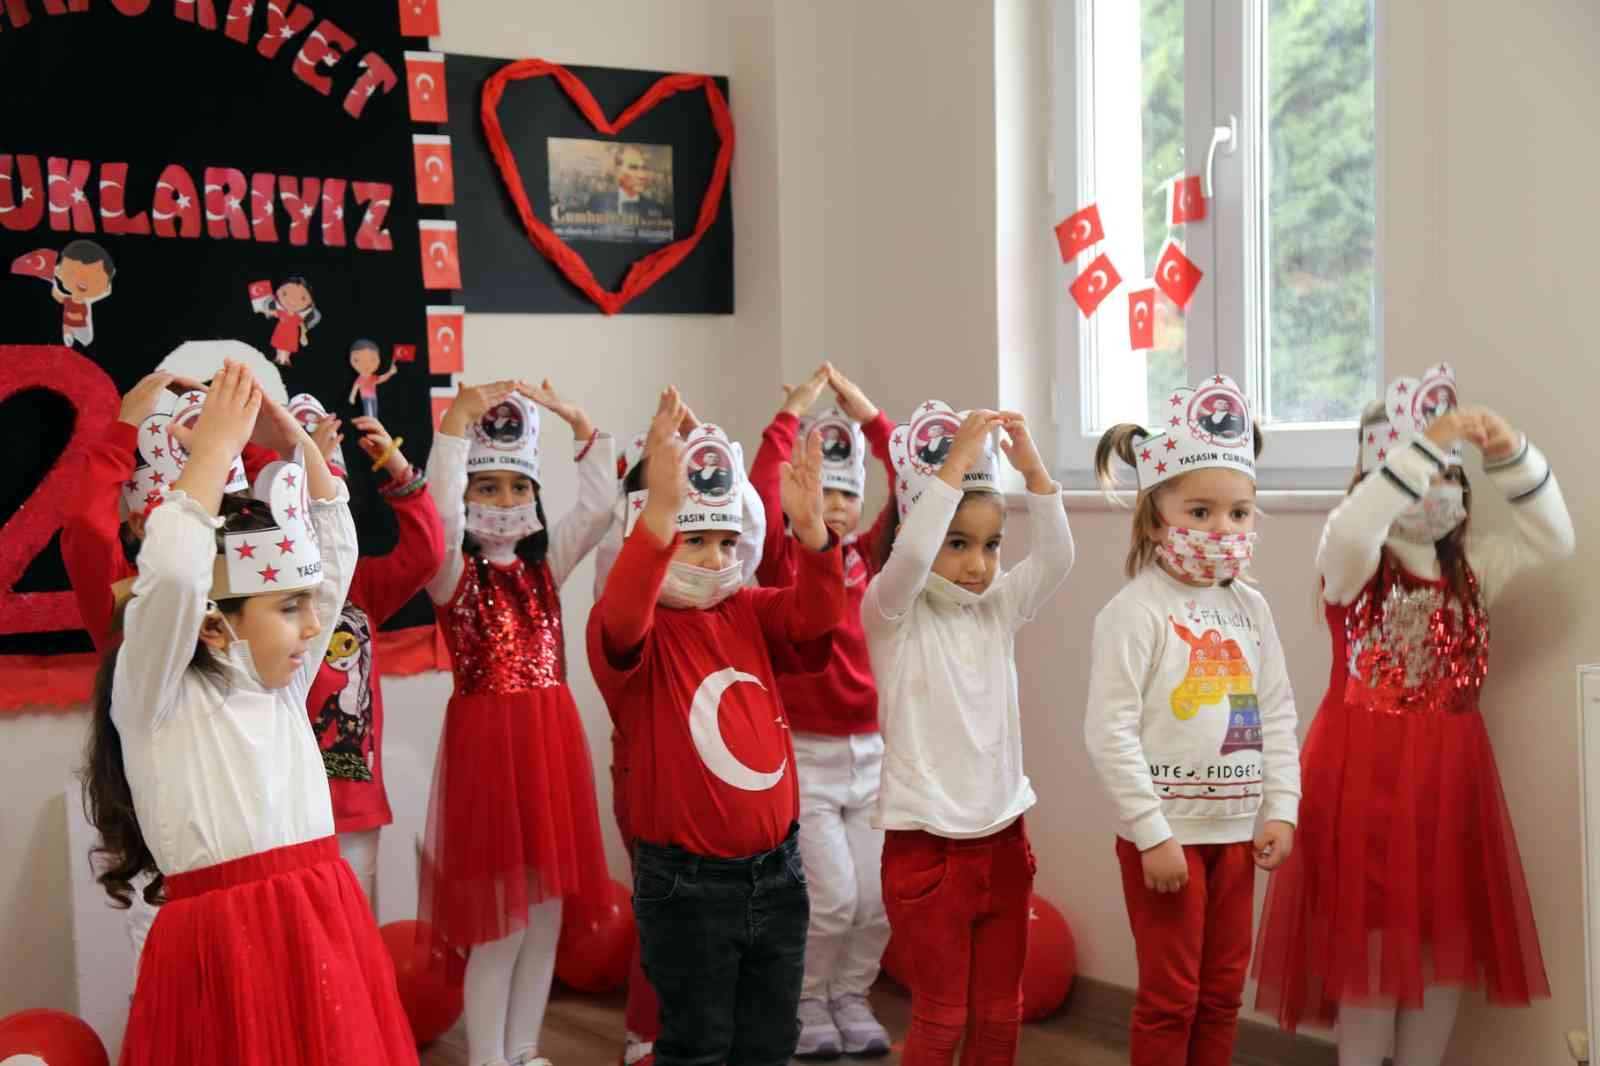 Büyükçekmece’de minik öğrencilerin Cumhuriyet Bayramı coşkusu #istanbul